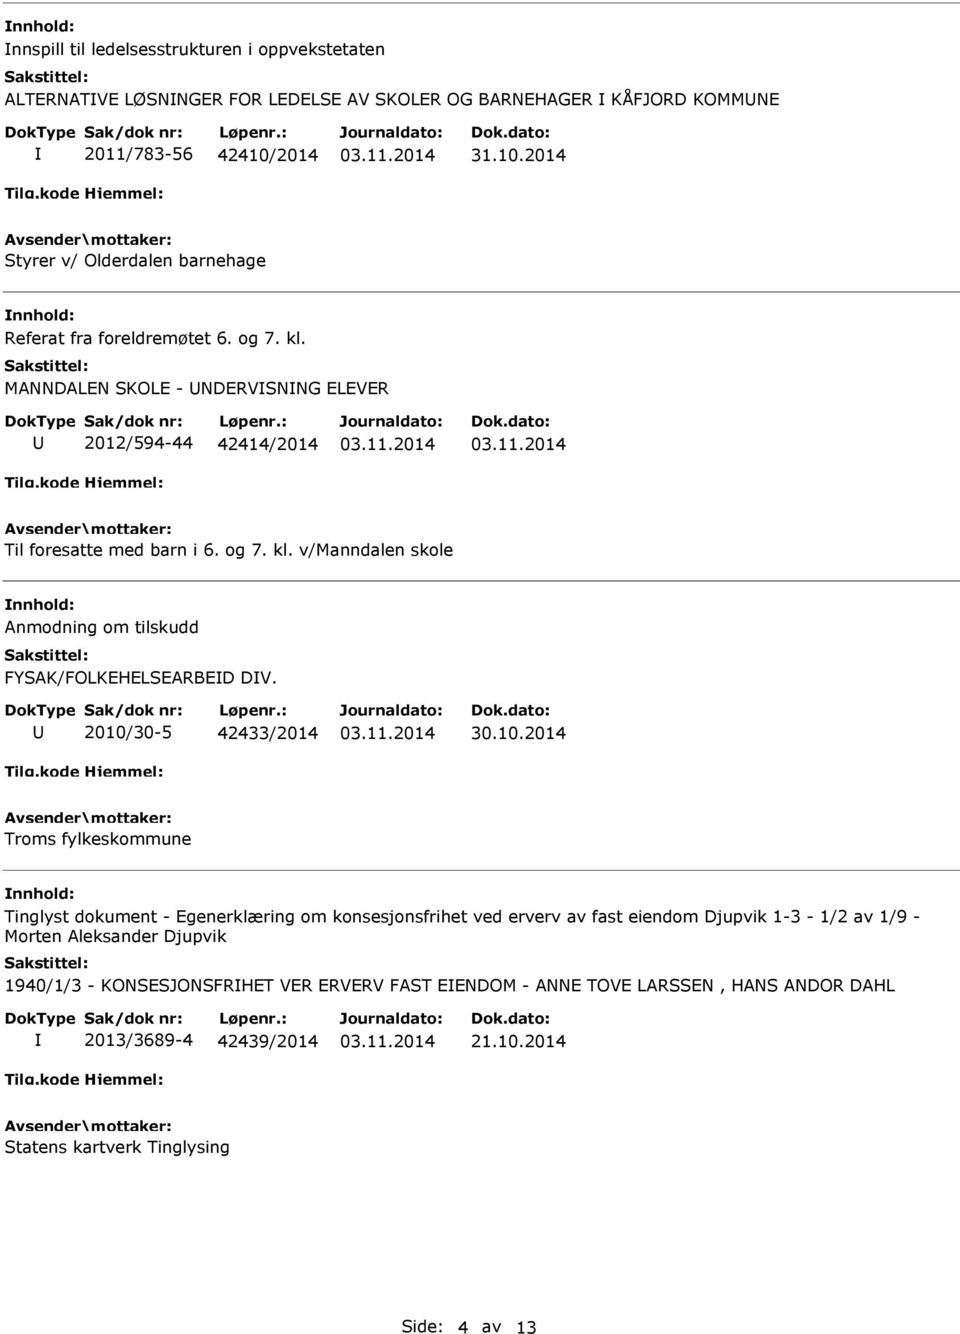 2010/30-5 42433/2014 30.10.2014 Troms fylkeskommune Tinglyst dokument - Egenerklæring om konsesjonsfrihet ved erverv av fast eiendom Djupvik 1-3 - 1/2 av 1/9 - Morten